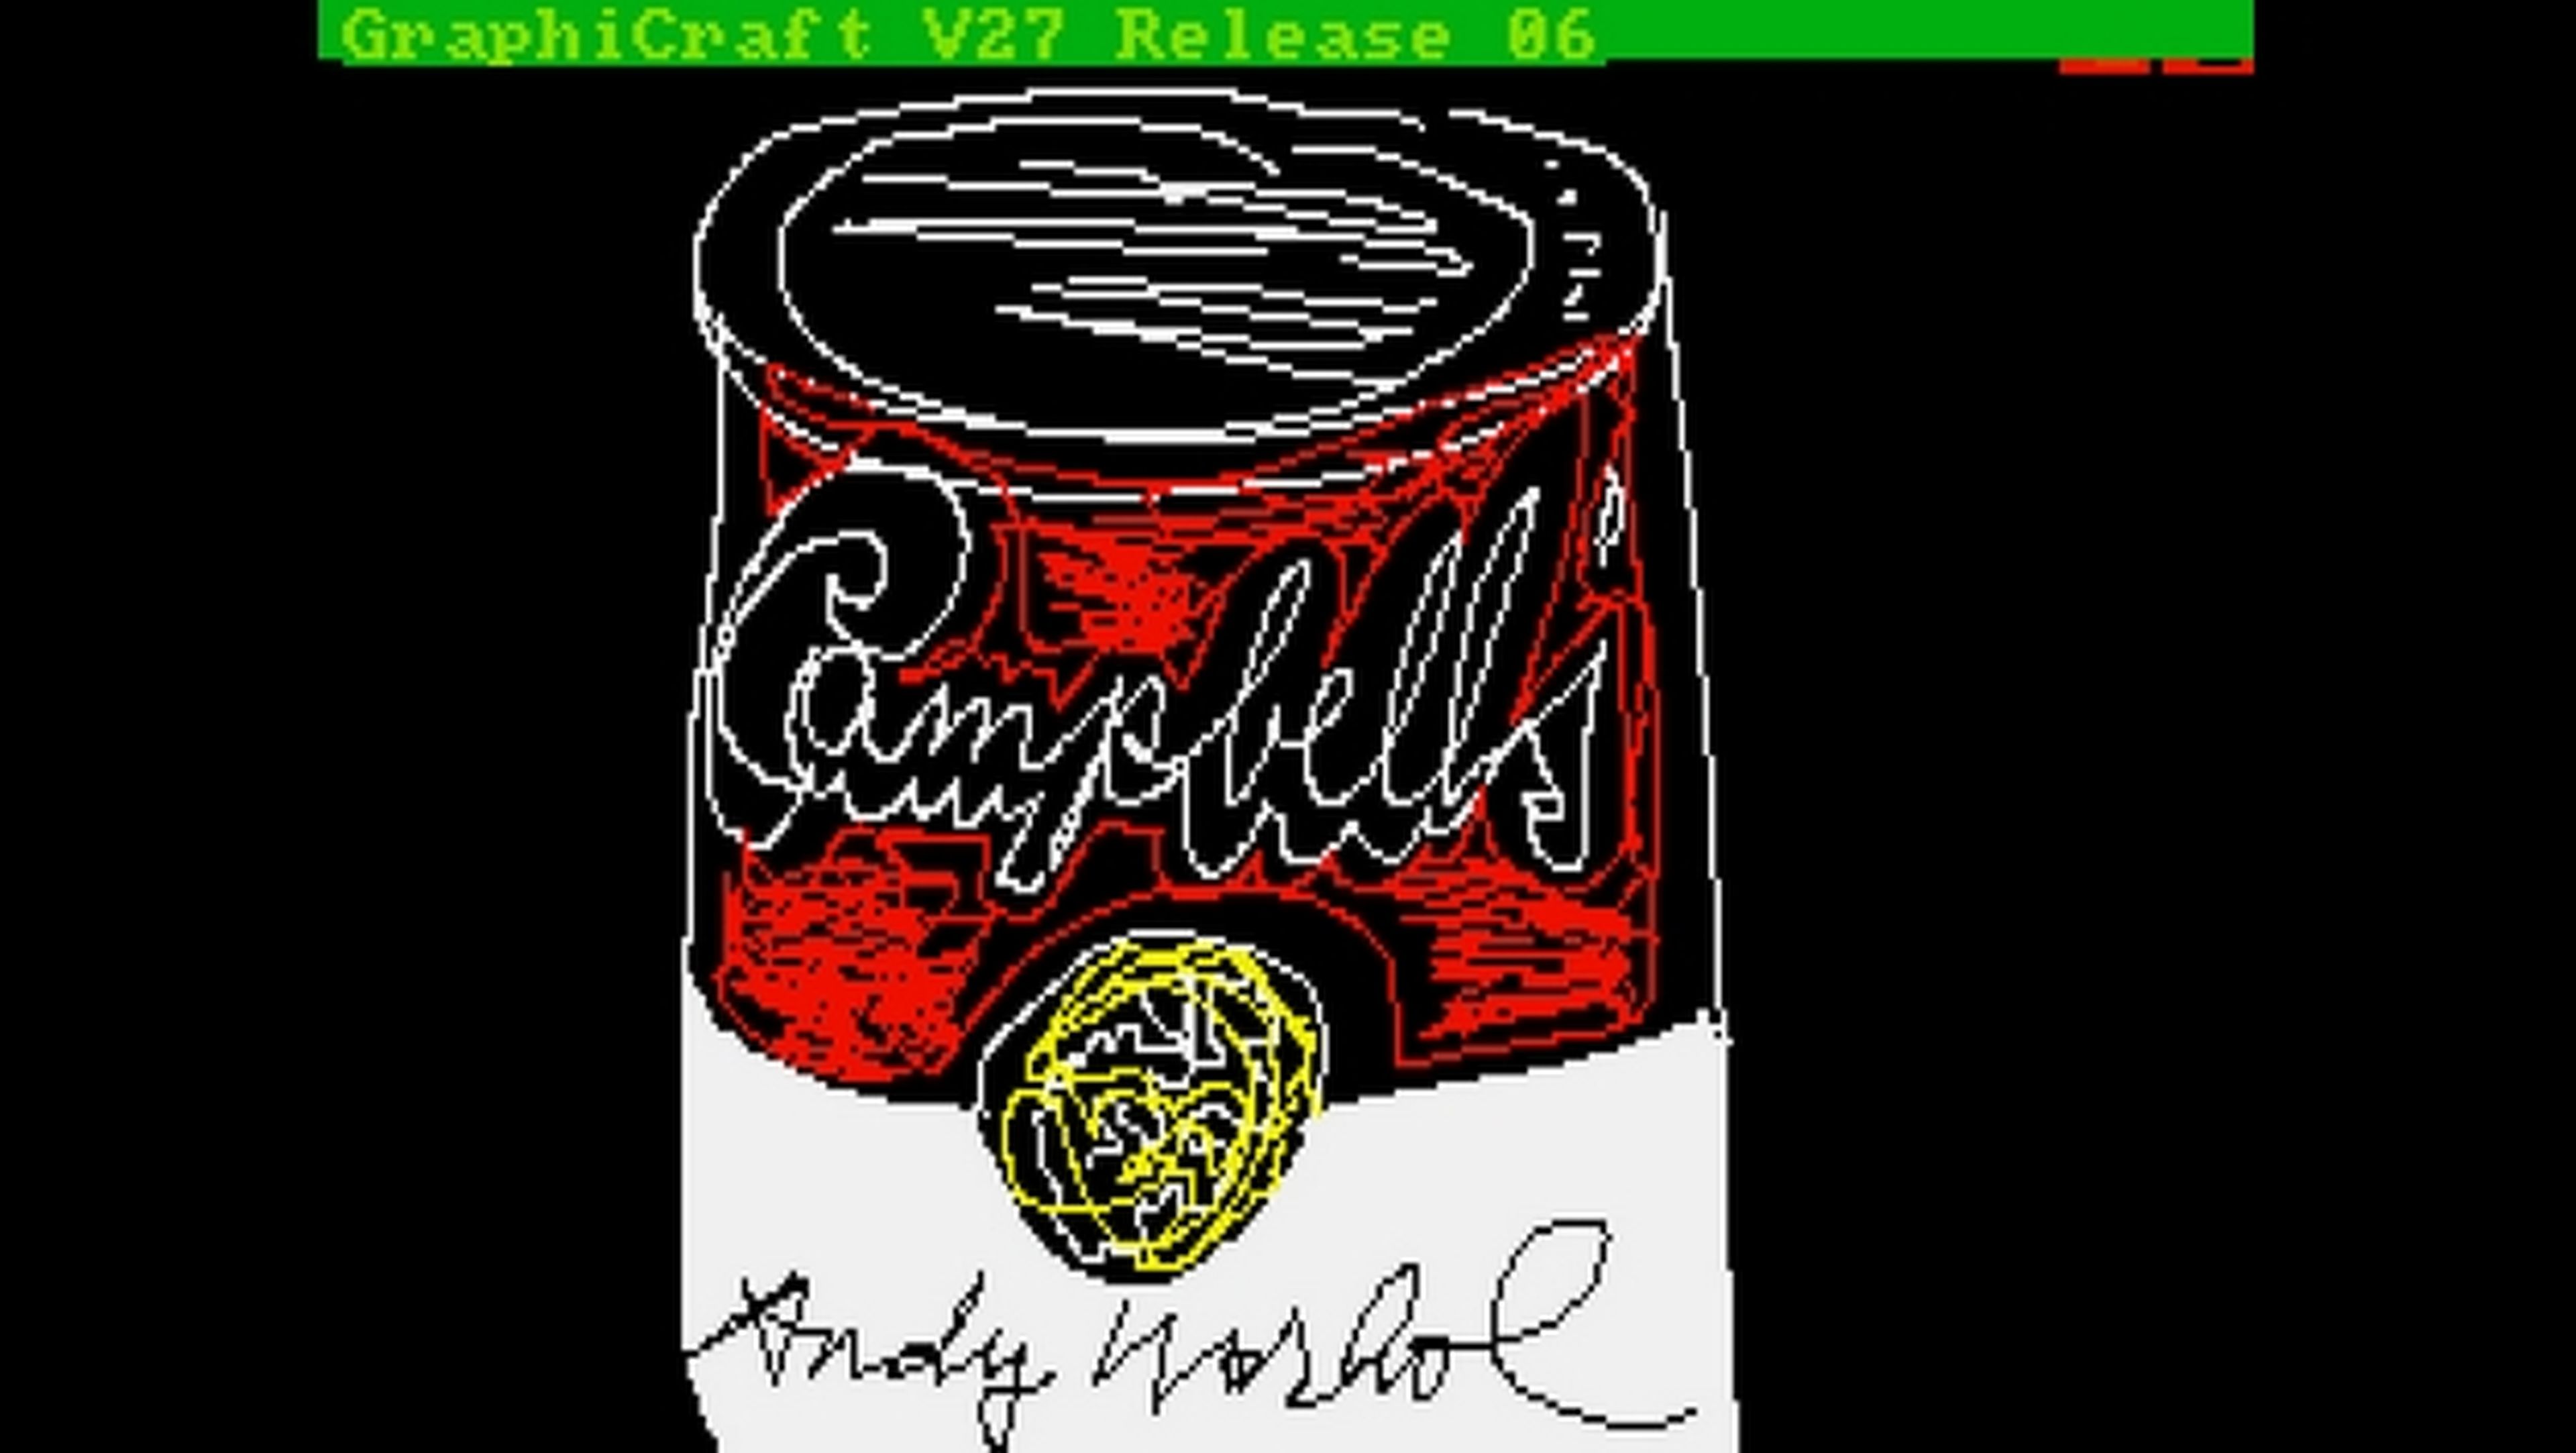 Descubren diseños de Andy Warhol realizados con ordenador Commodore Amiga 1000, perdidos hace 30 años